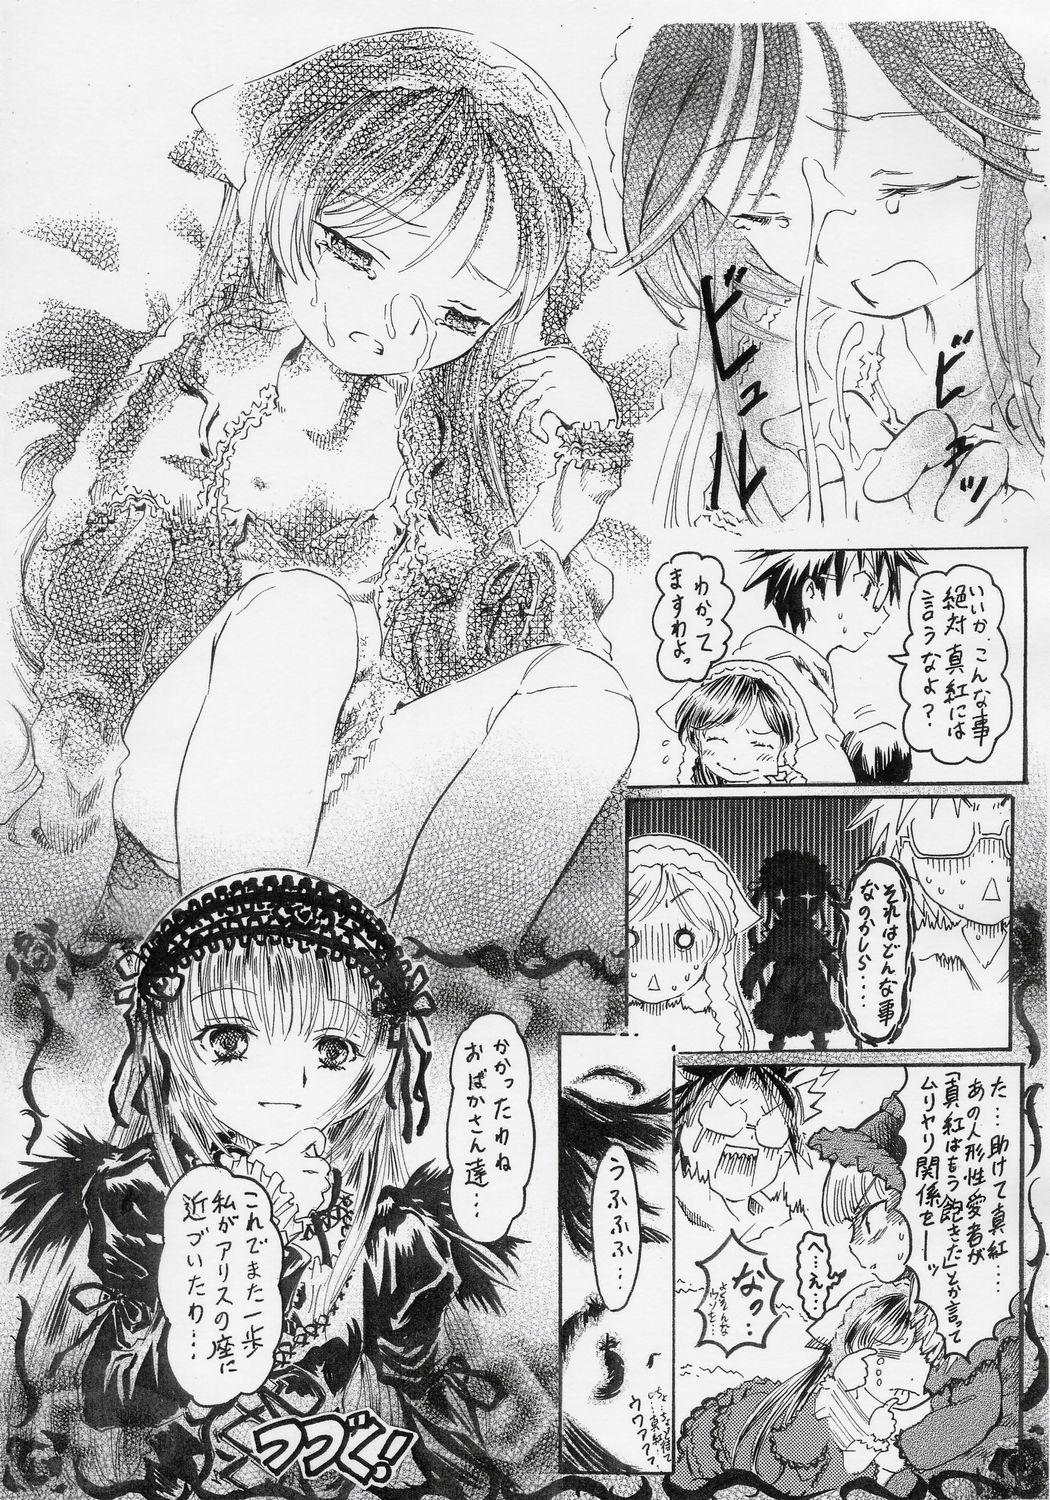 Prostitute 禁じられた遊び - Rozen maiden Online - Page 9